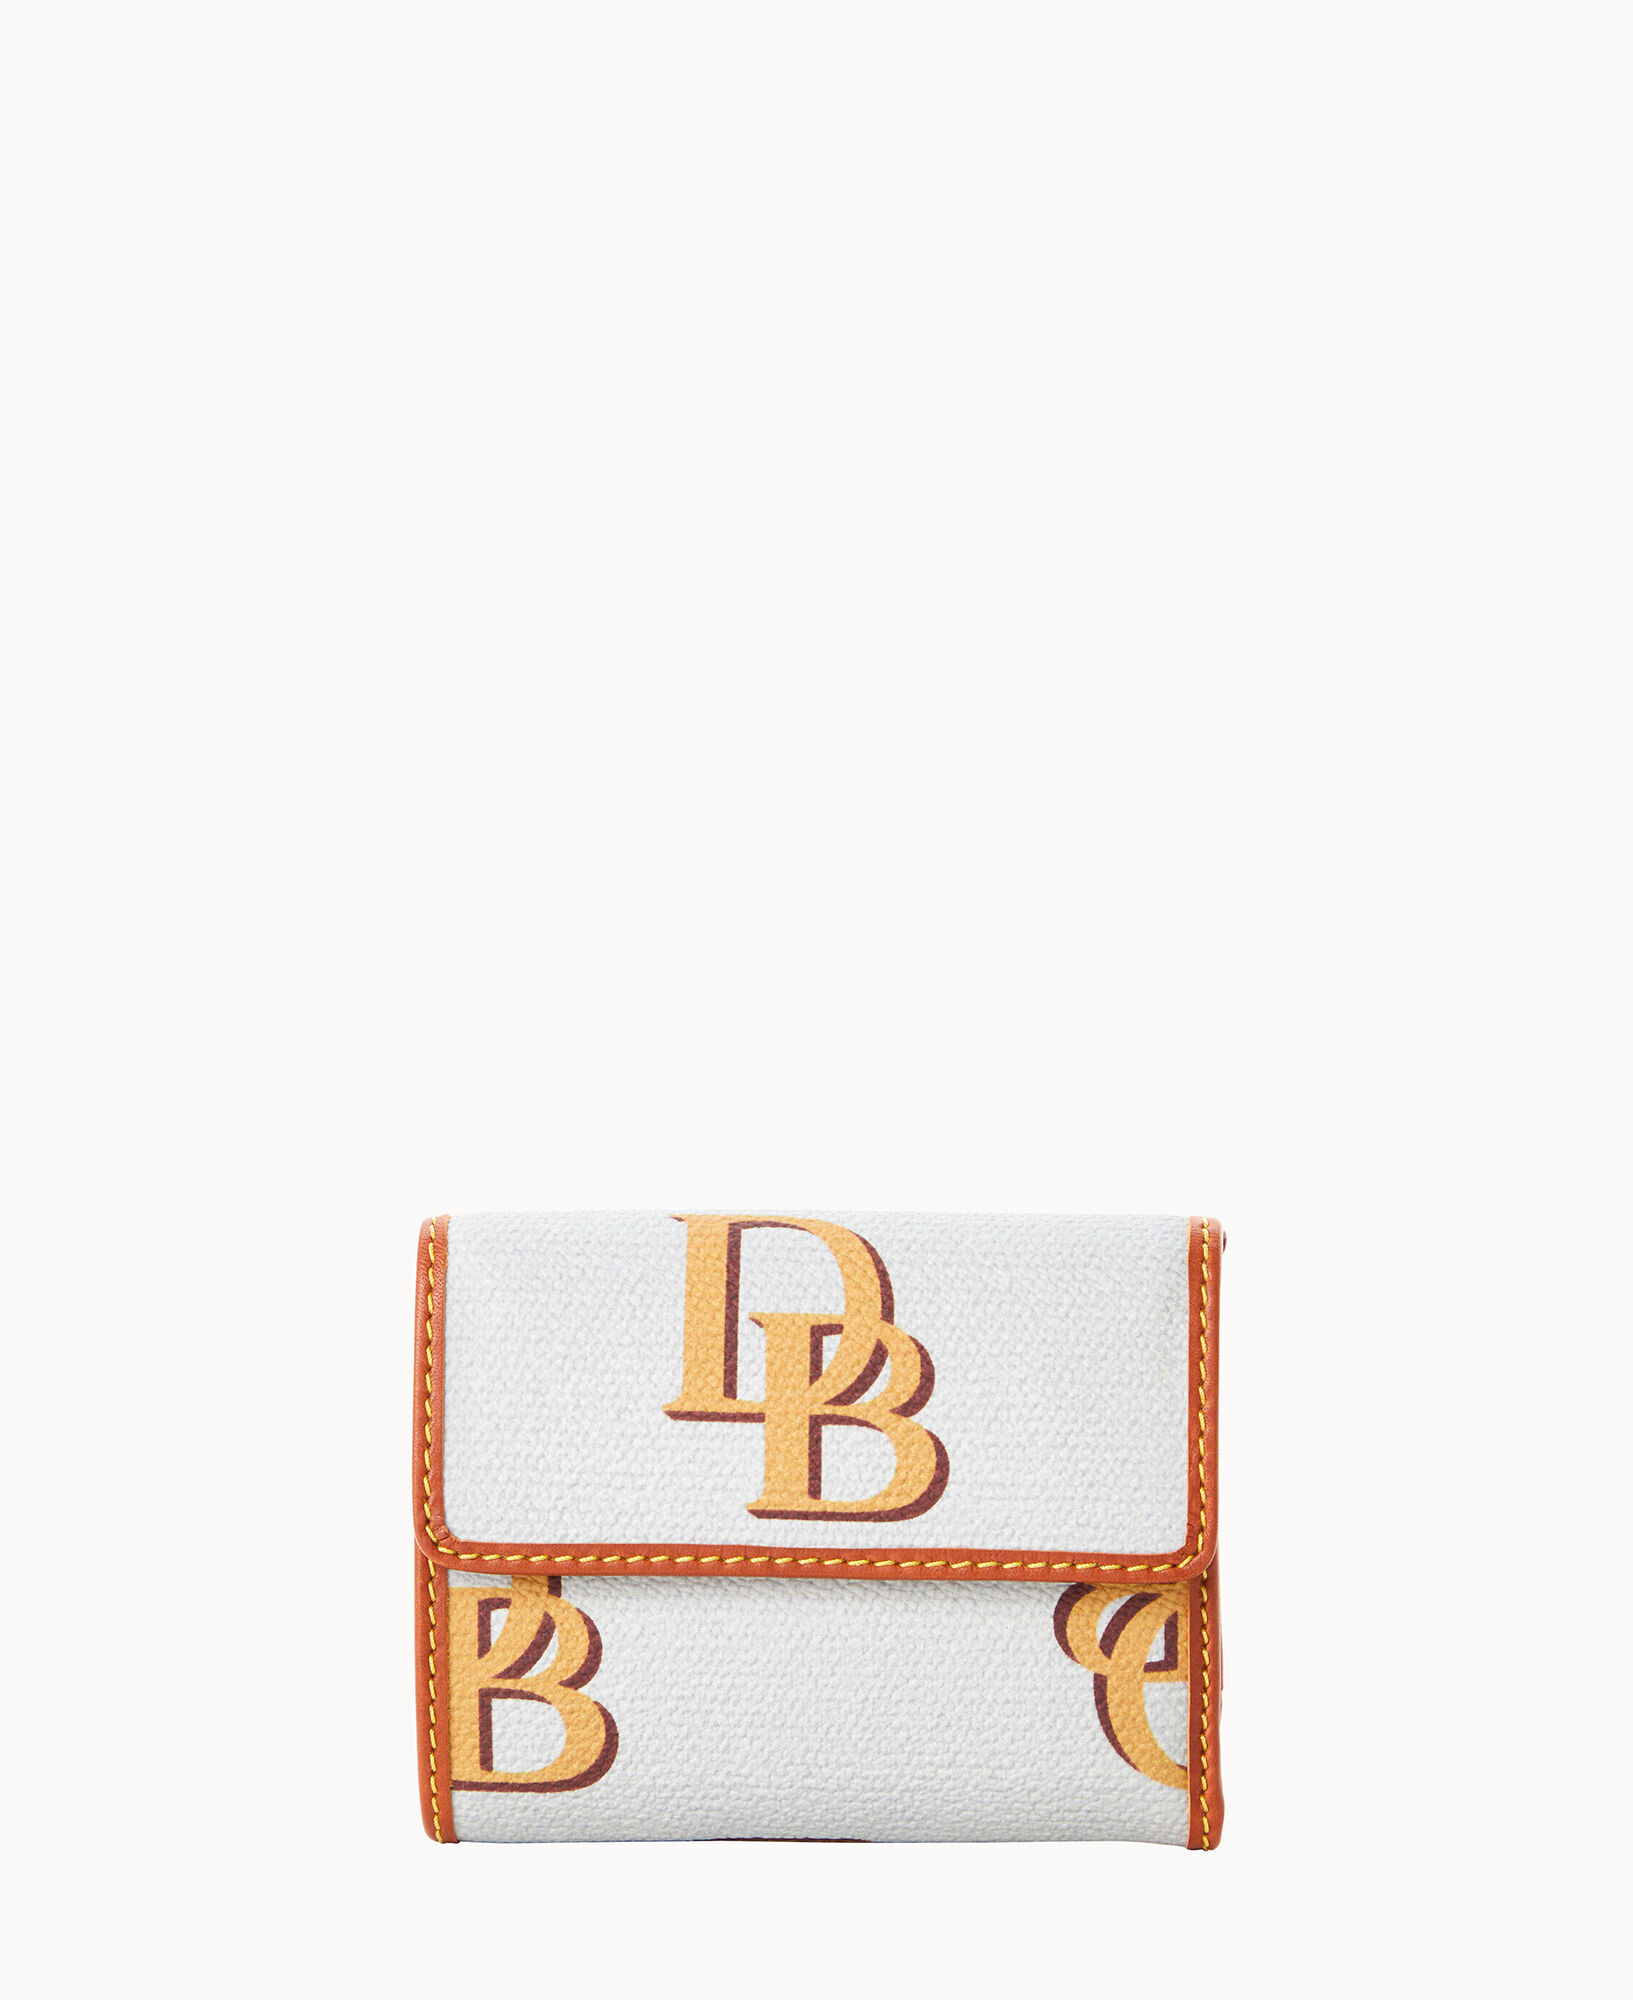 Dooney & Bourke Small Flap Wallet